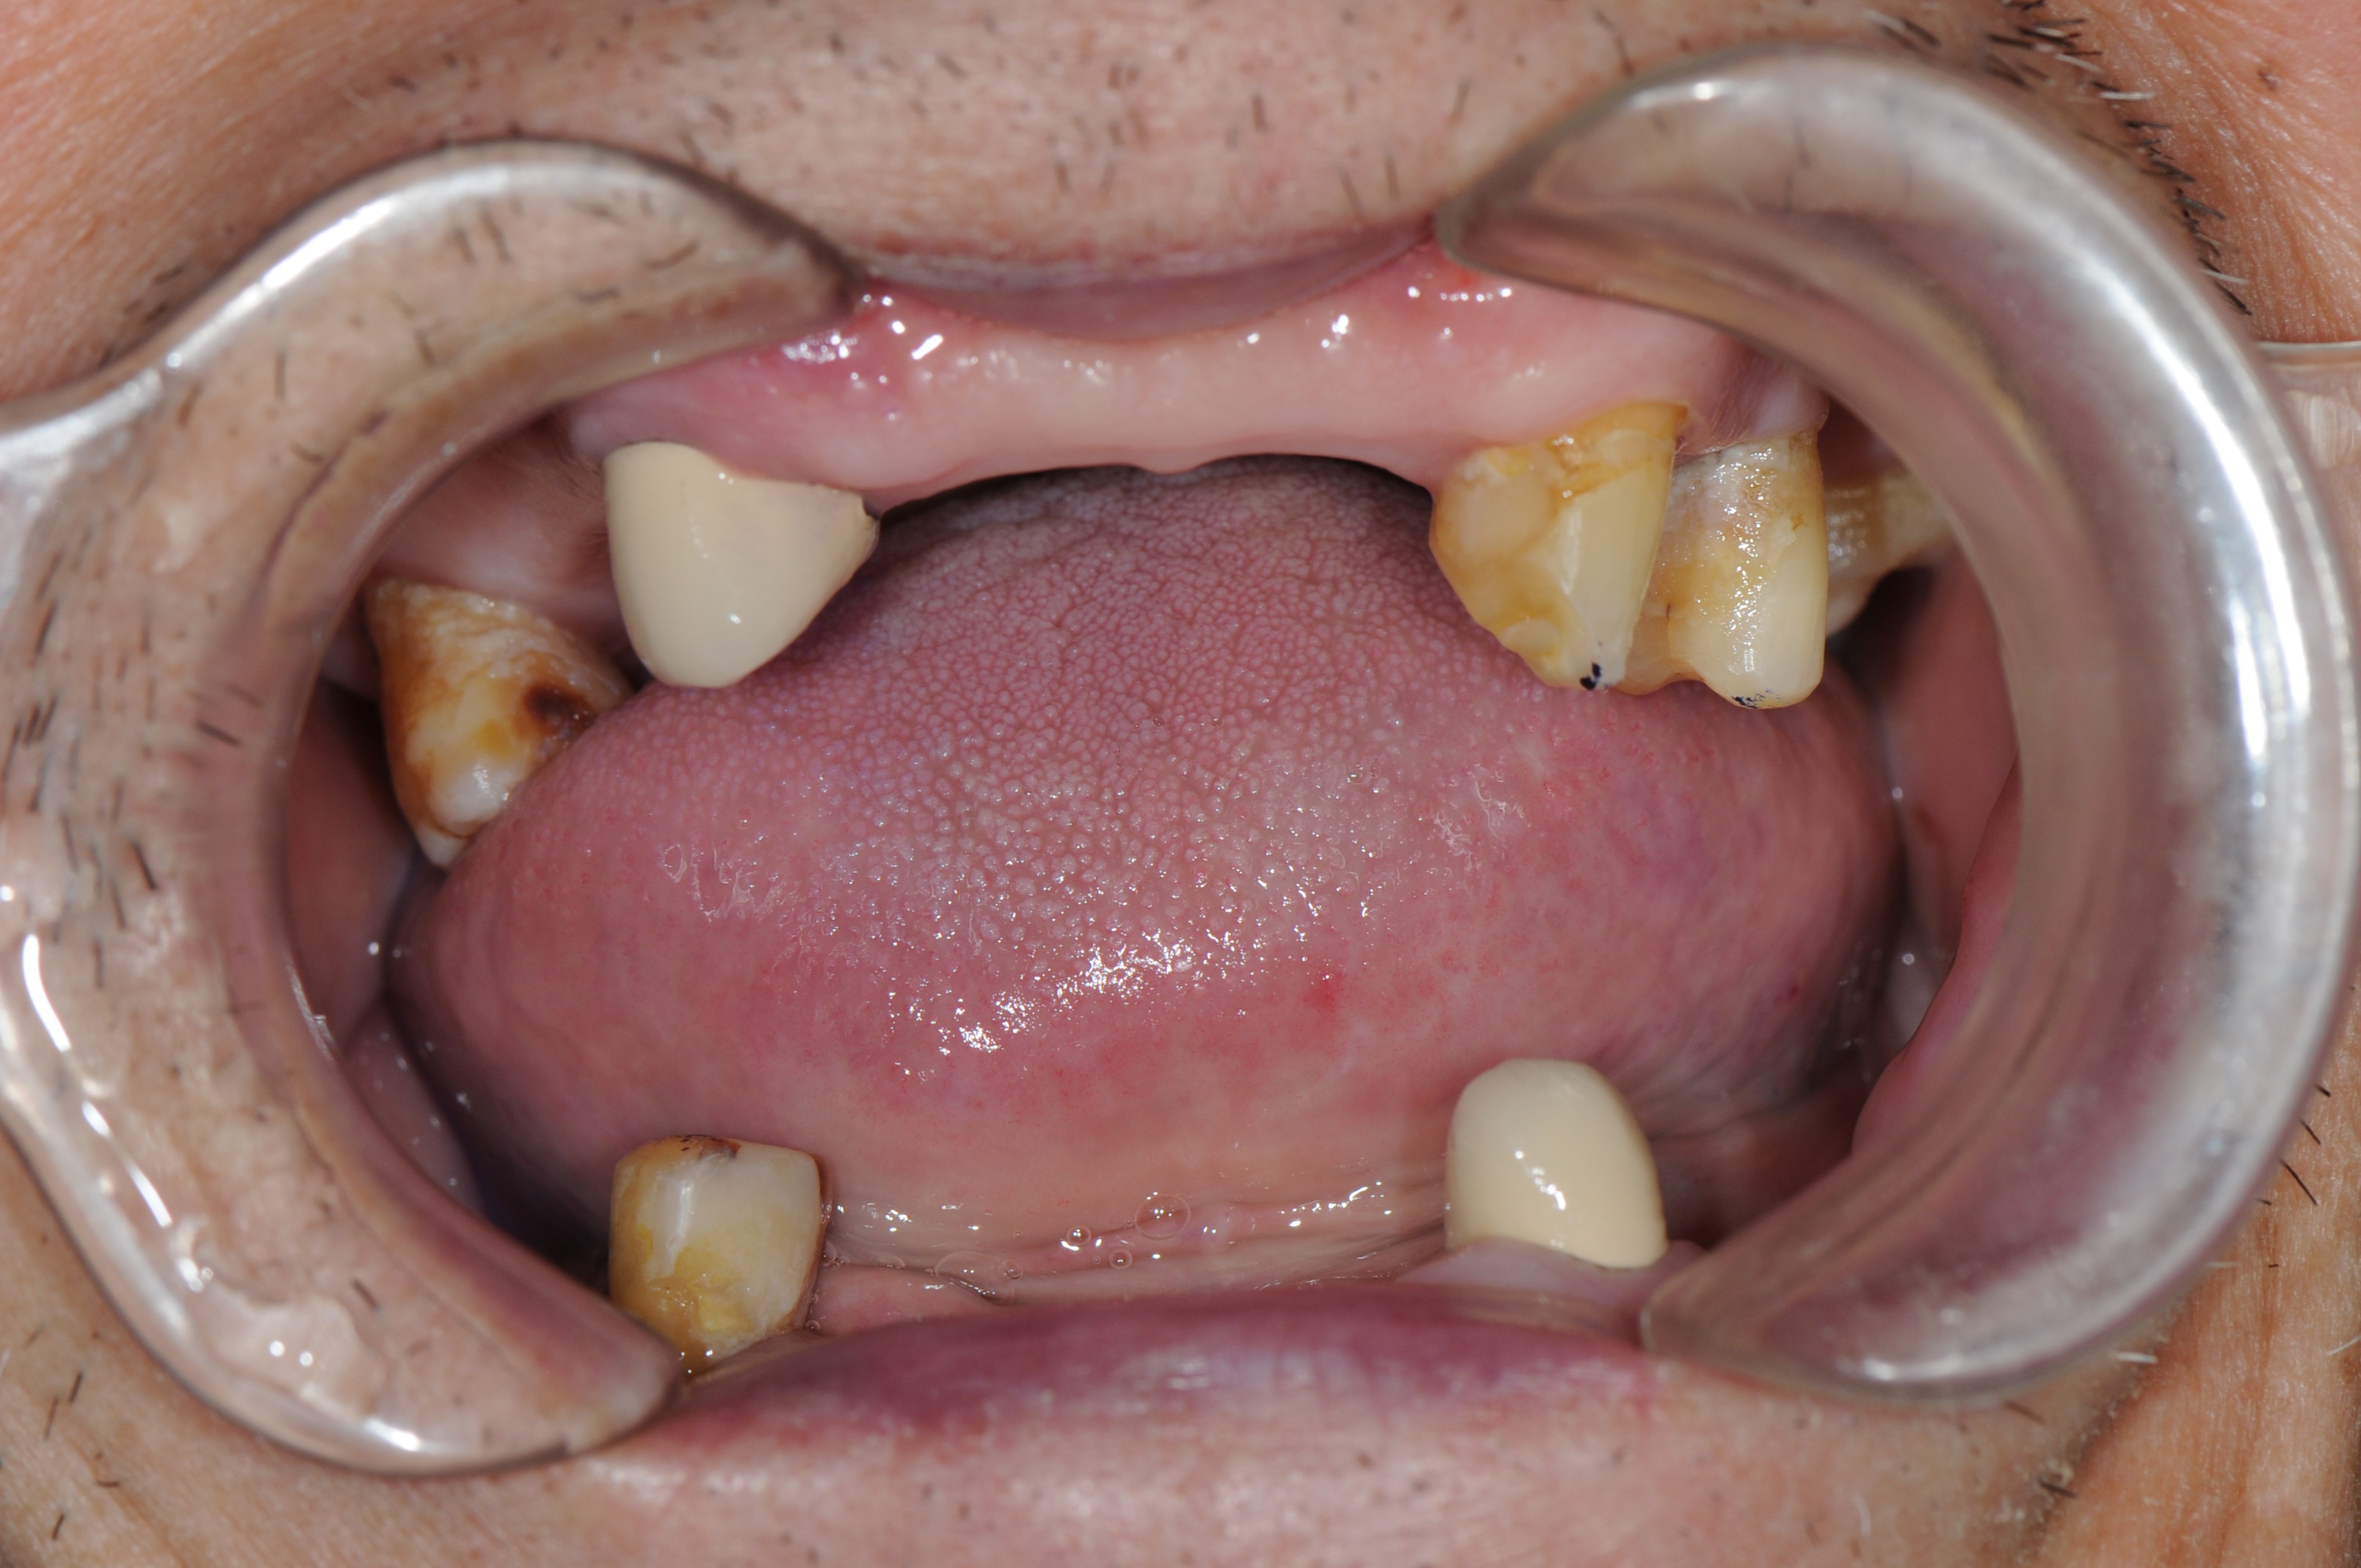 大牙活动义齿图片图片